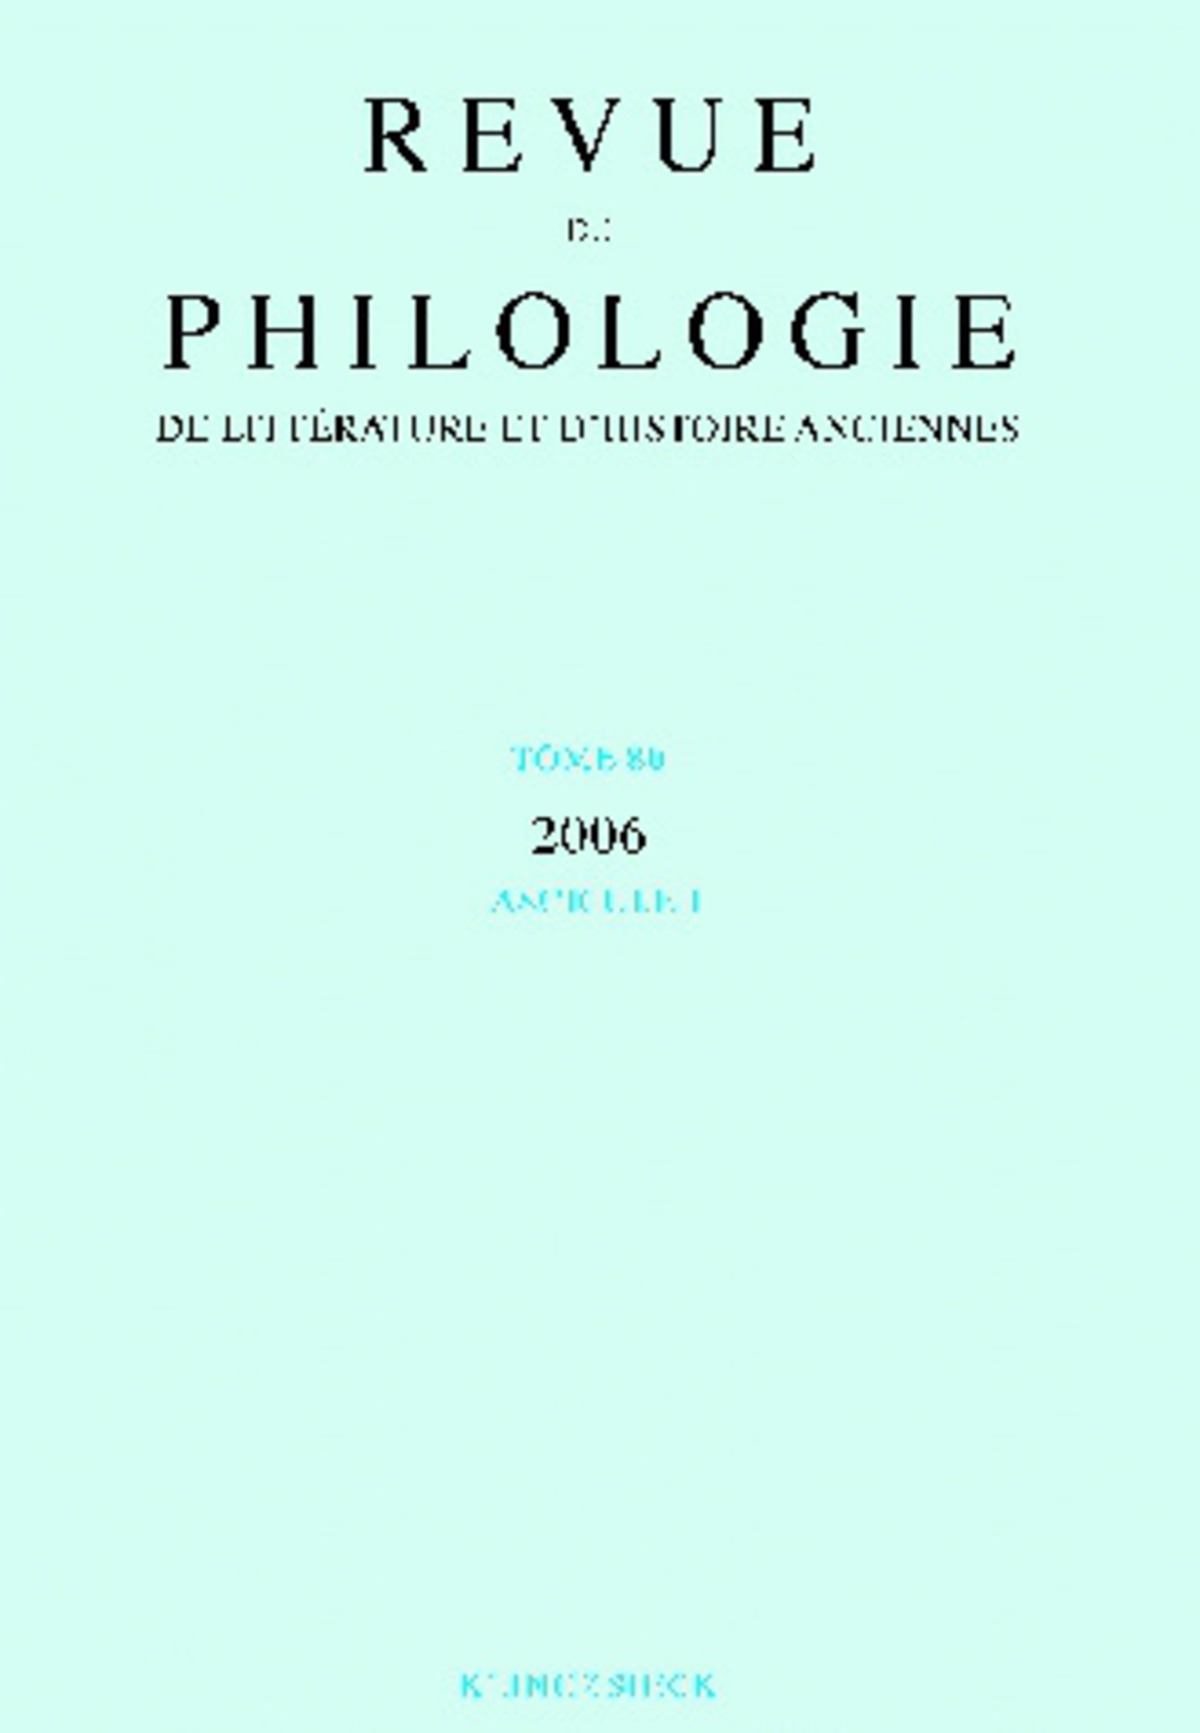 Revue de philologie, de littérature et d'histoire anciennes volume 80